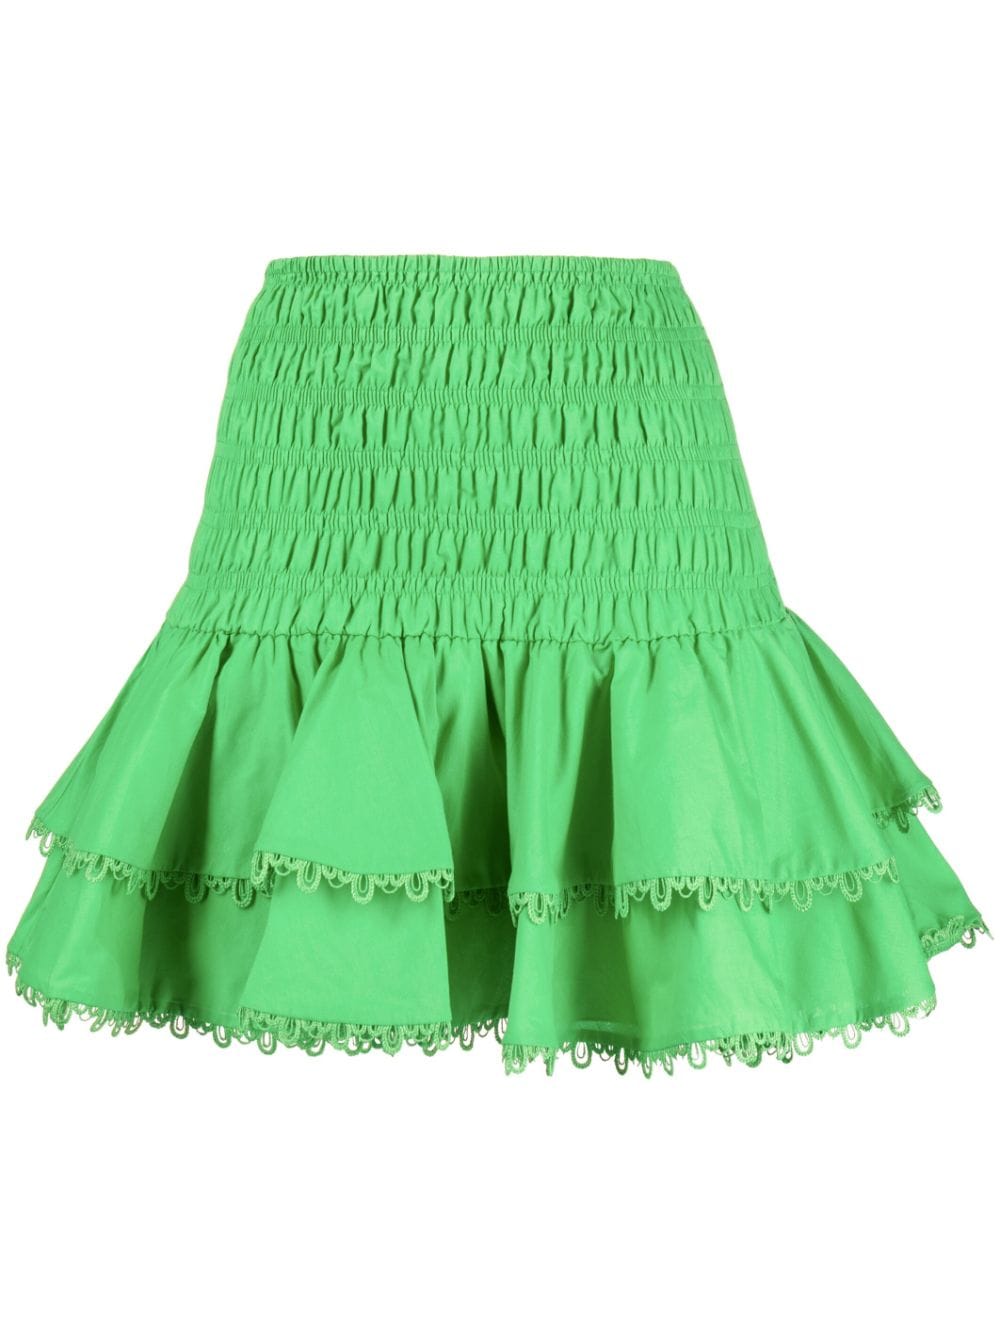 Charo Ruiz Ibiza Gladi ruffled cotton-blend miniskirt - Green